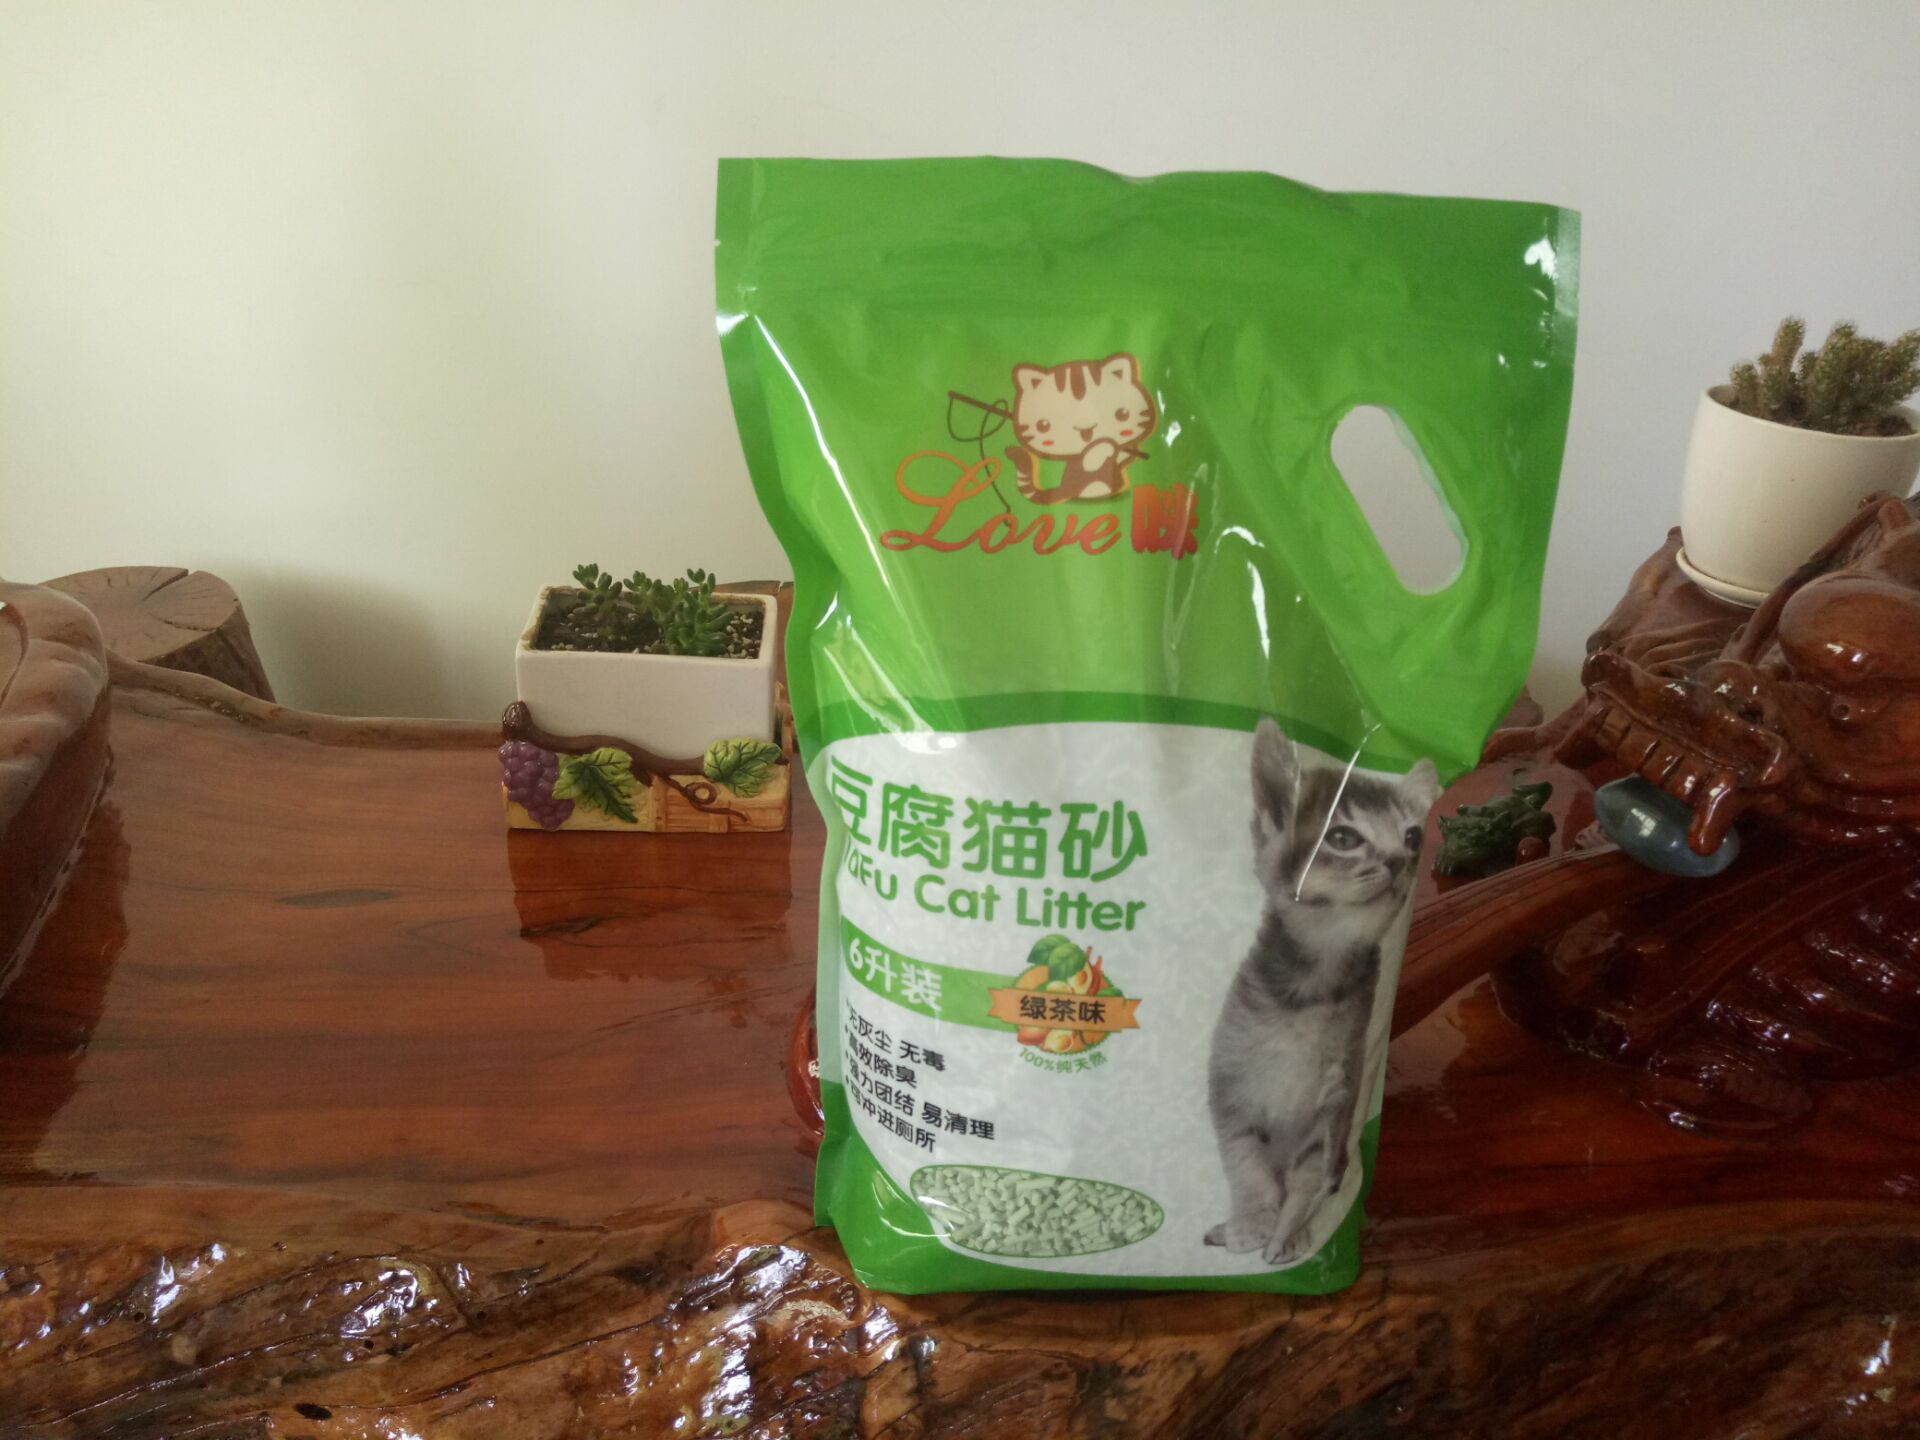 袋裝綠茶豆腐貓砂